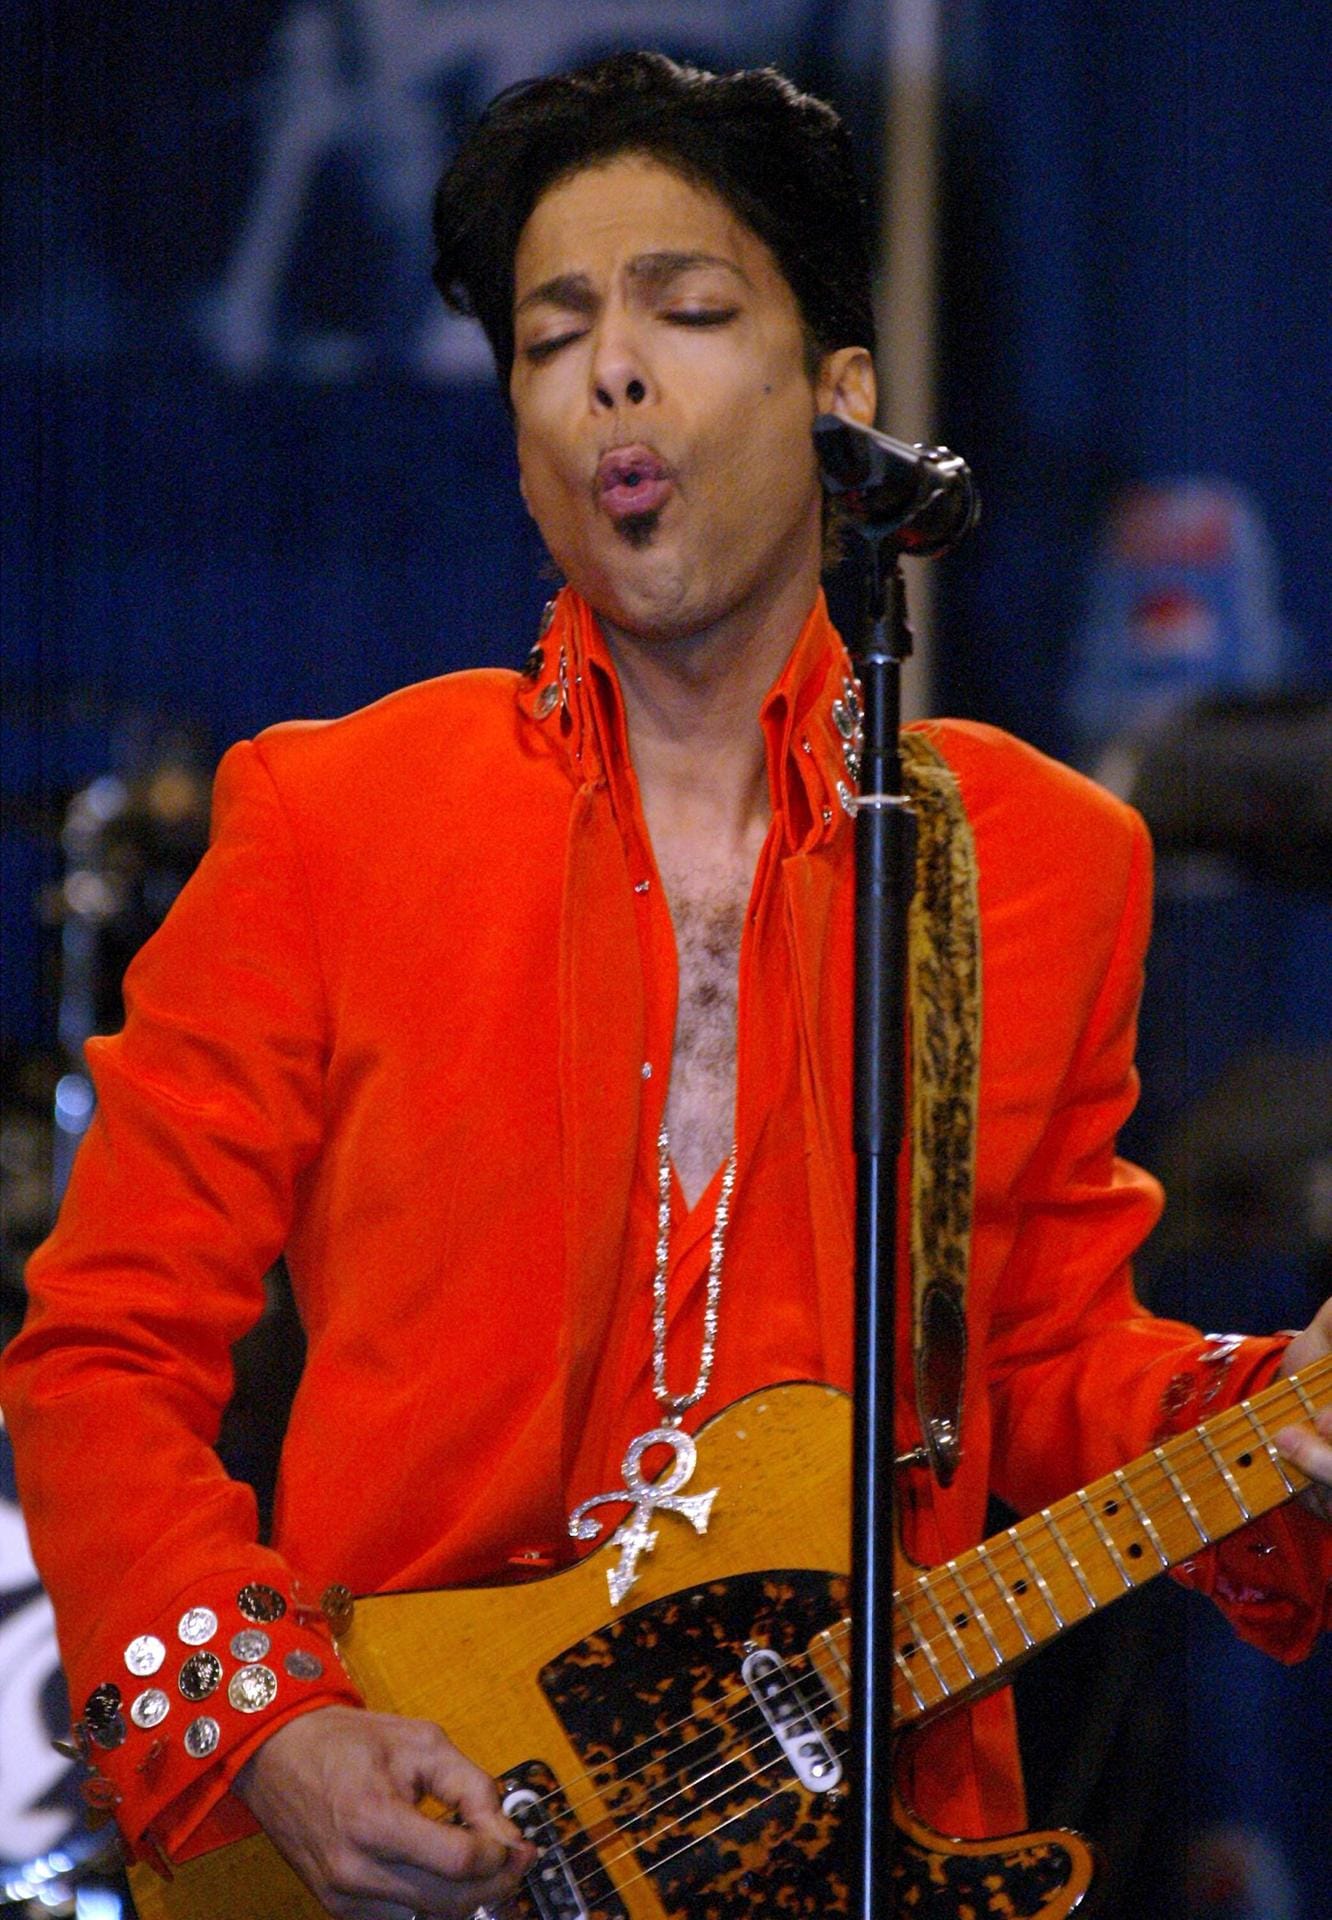 Seine Fans verehrten Prince als unglaublich virtuosen Gitarrenspieler.